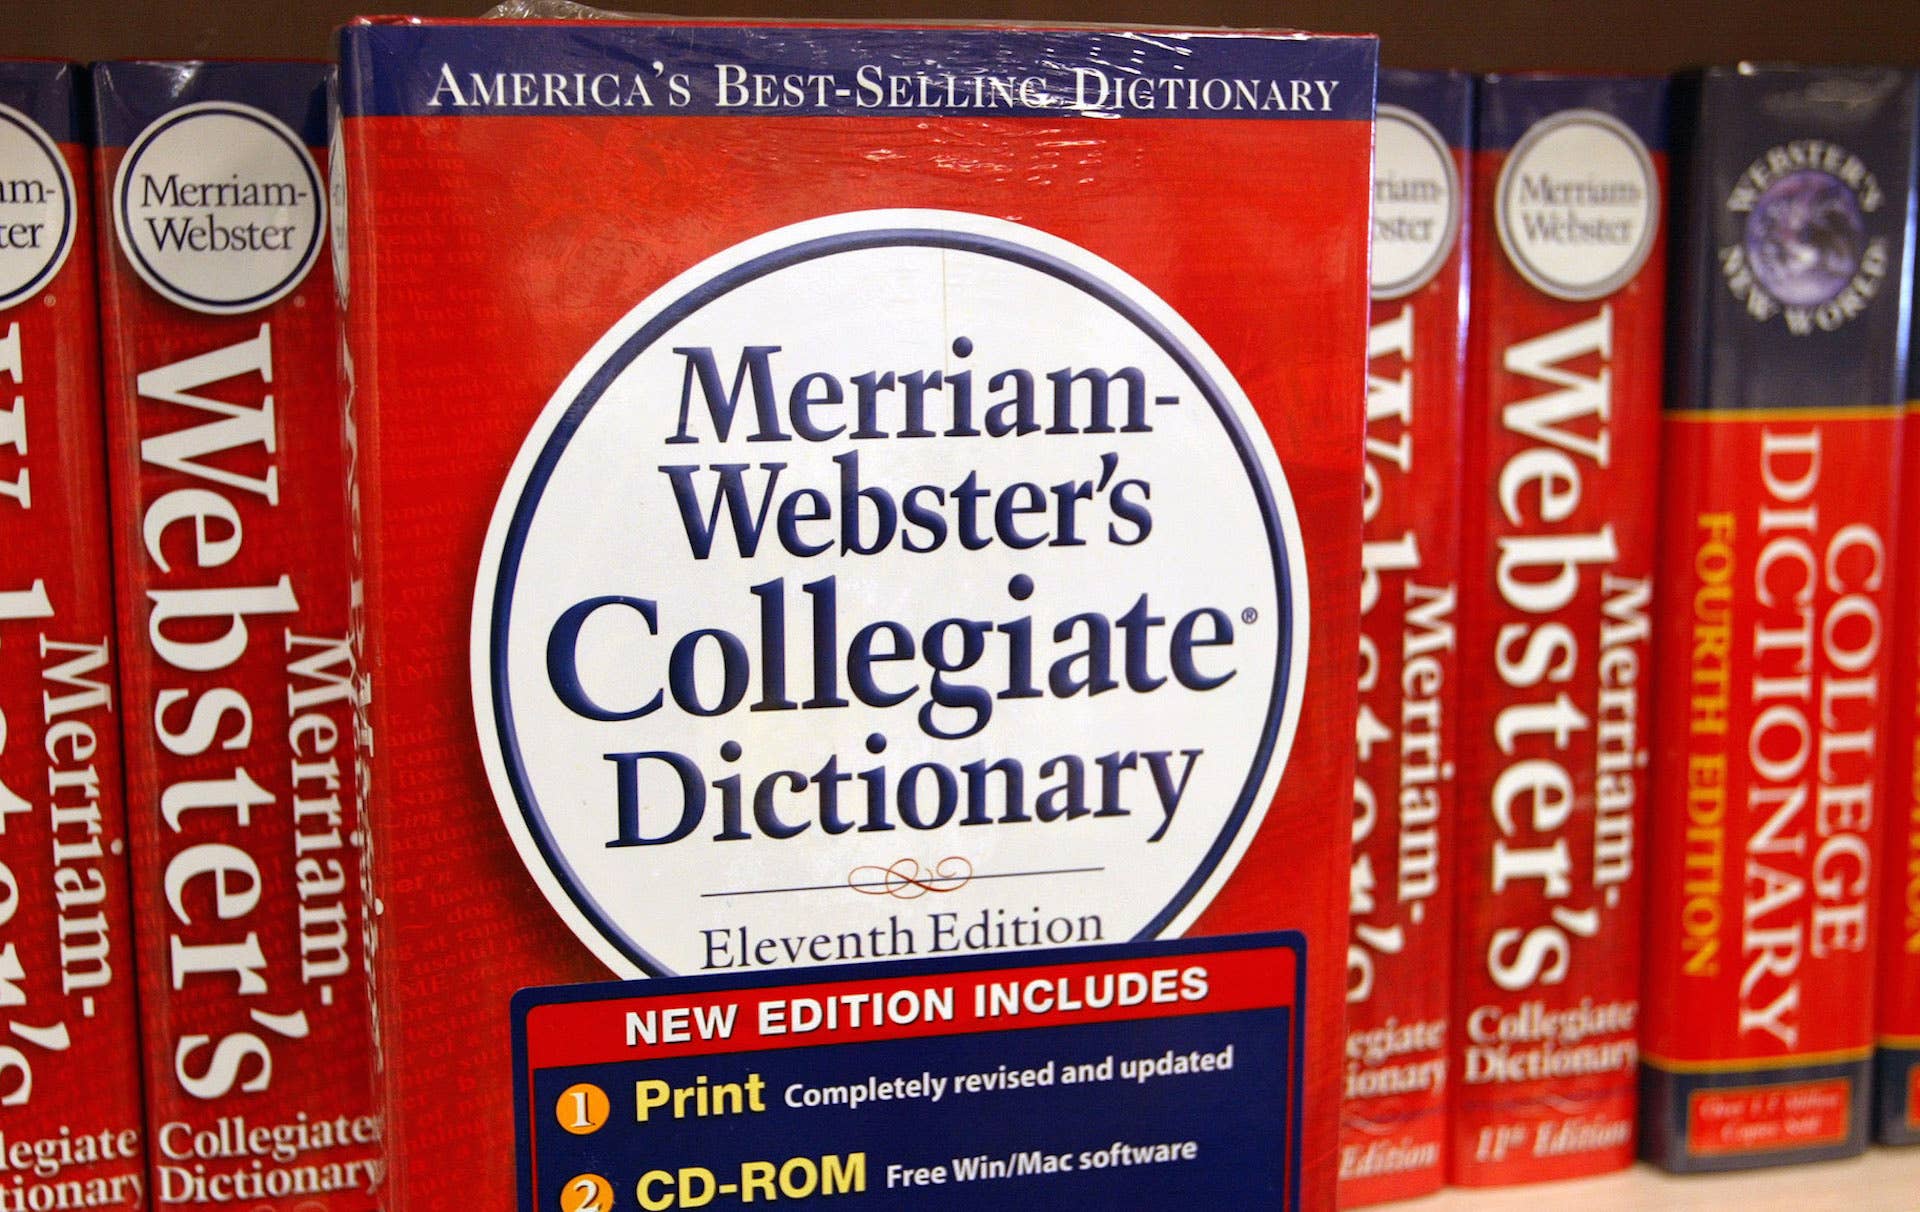 Merriam-Webster's collegiate dictionary